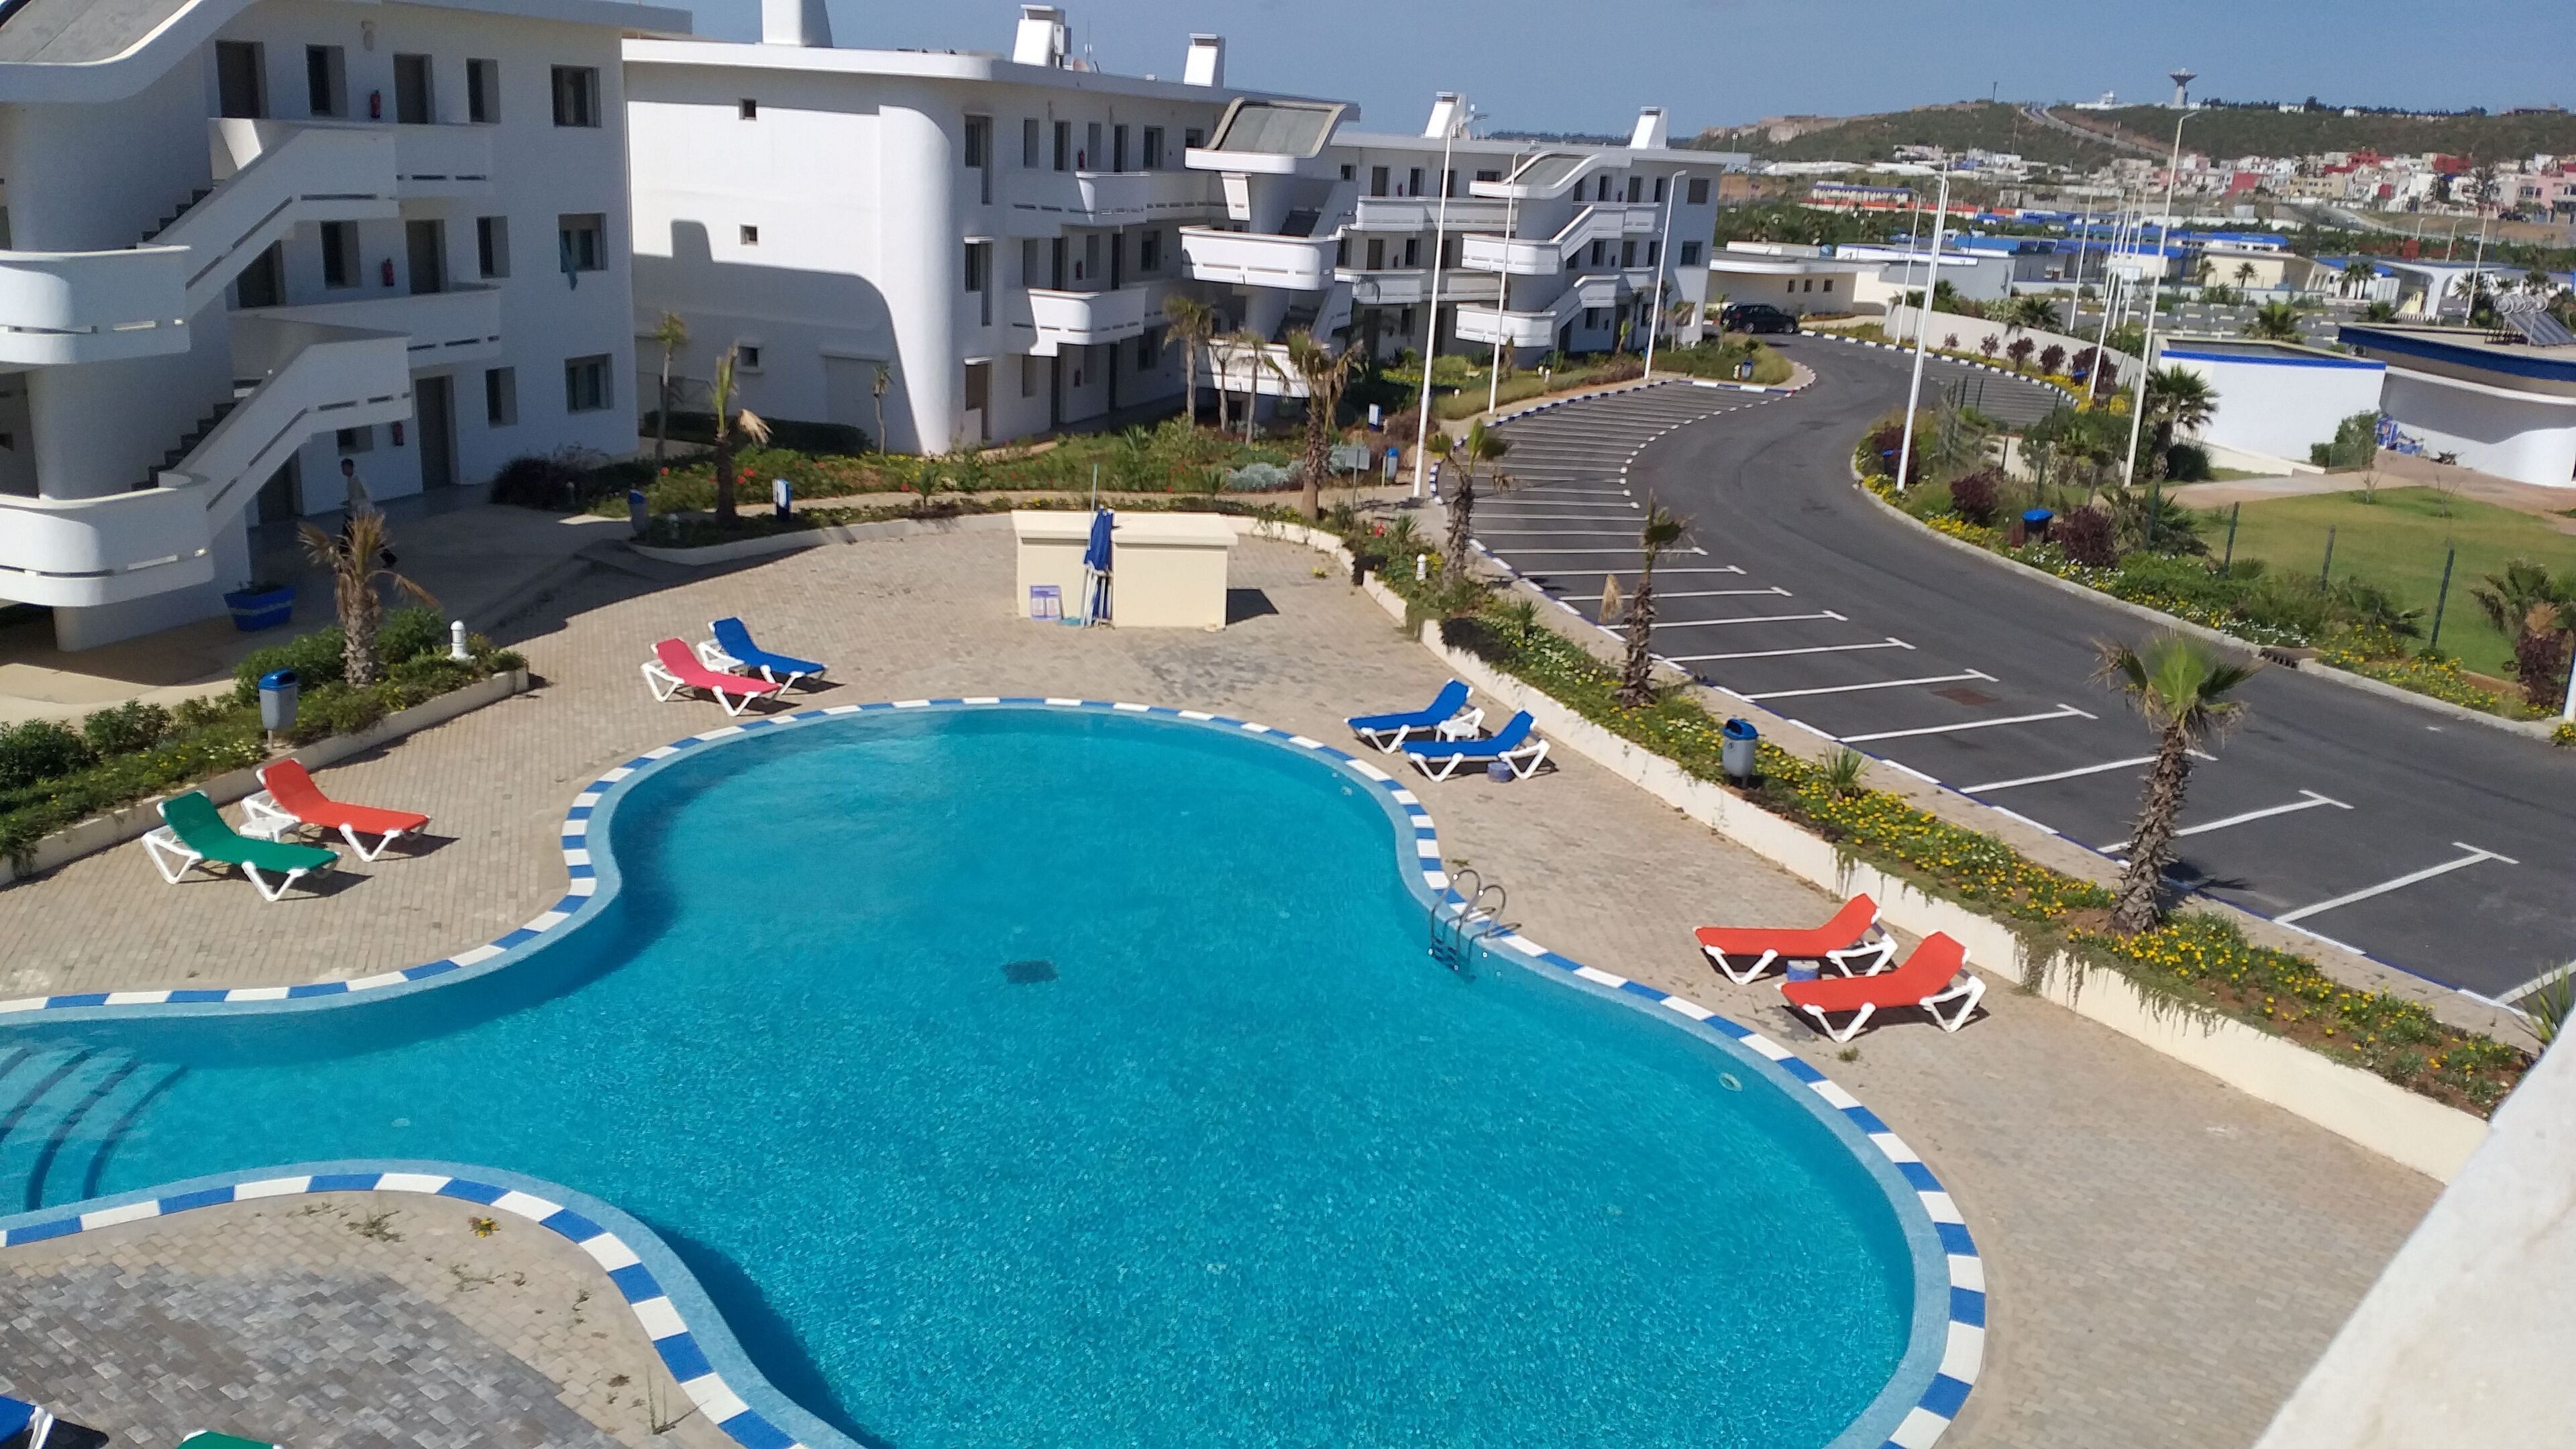 Kenz Mehdia Hotel Resort Aqua Park